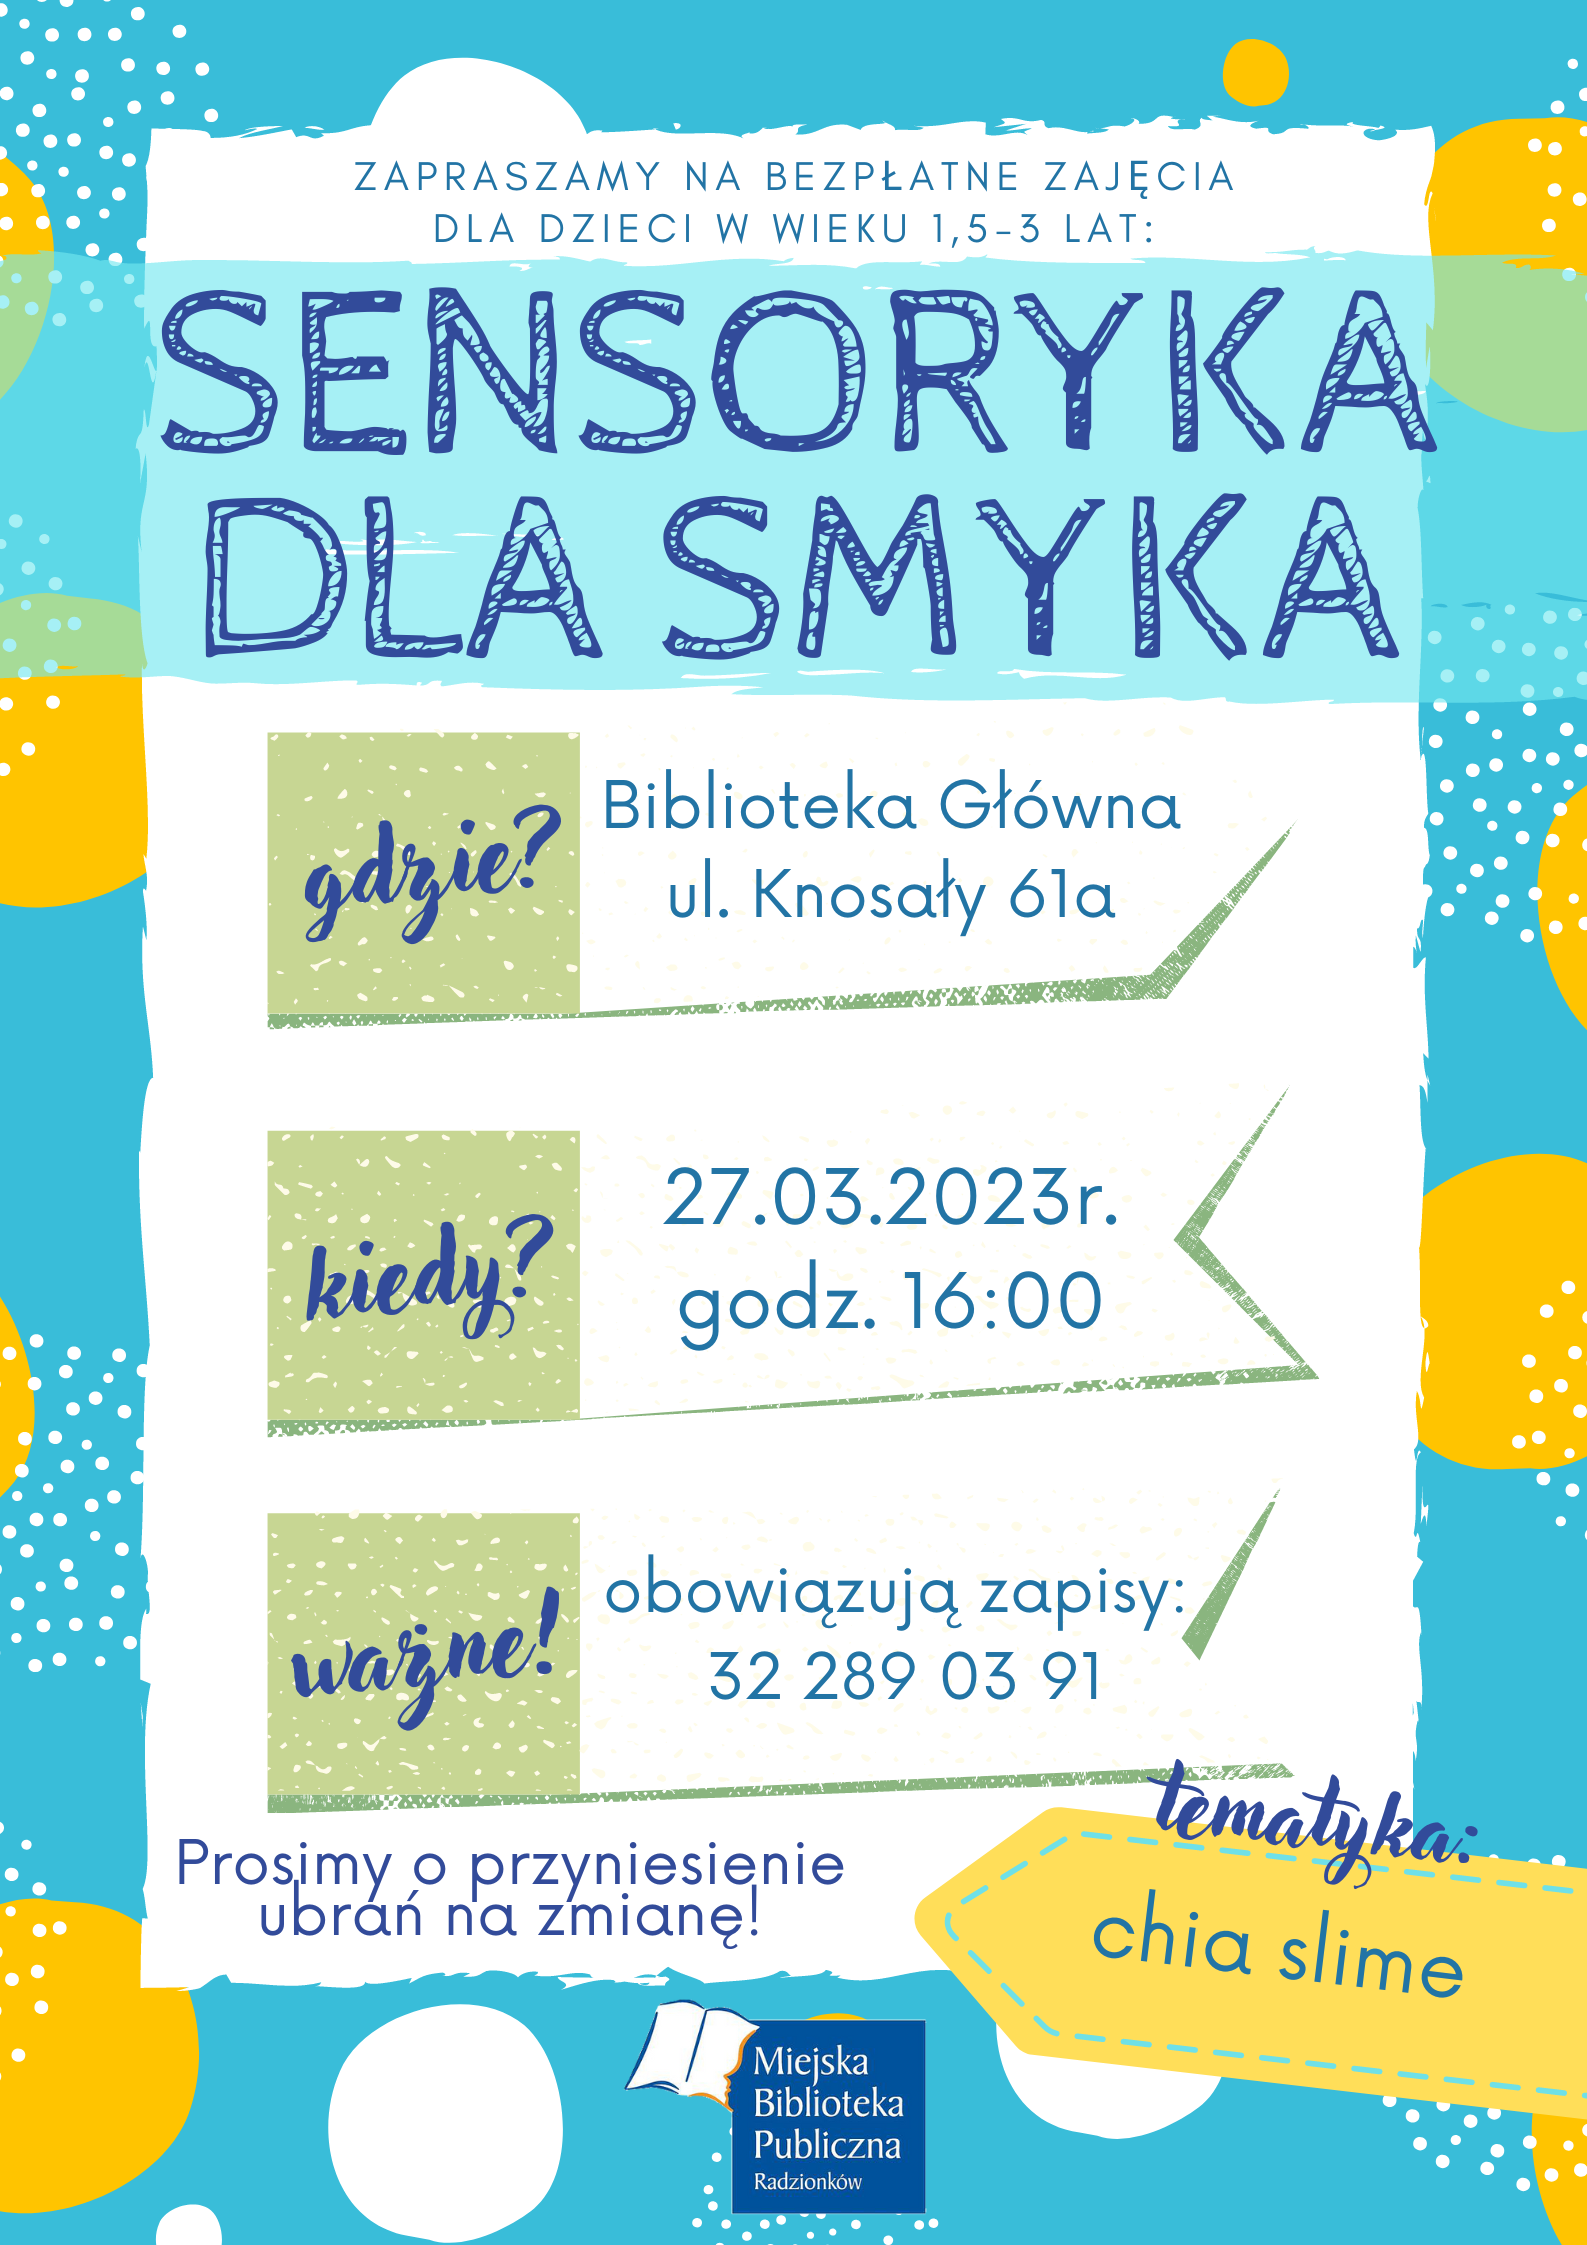 Zapraszamy na zajęcia z cyklu sensoryka dla smyka, które odbędą się w Bibliotece Głównej 27.03.2023 o godzinie 16.00. Temat to chia slime.